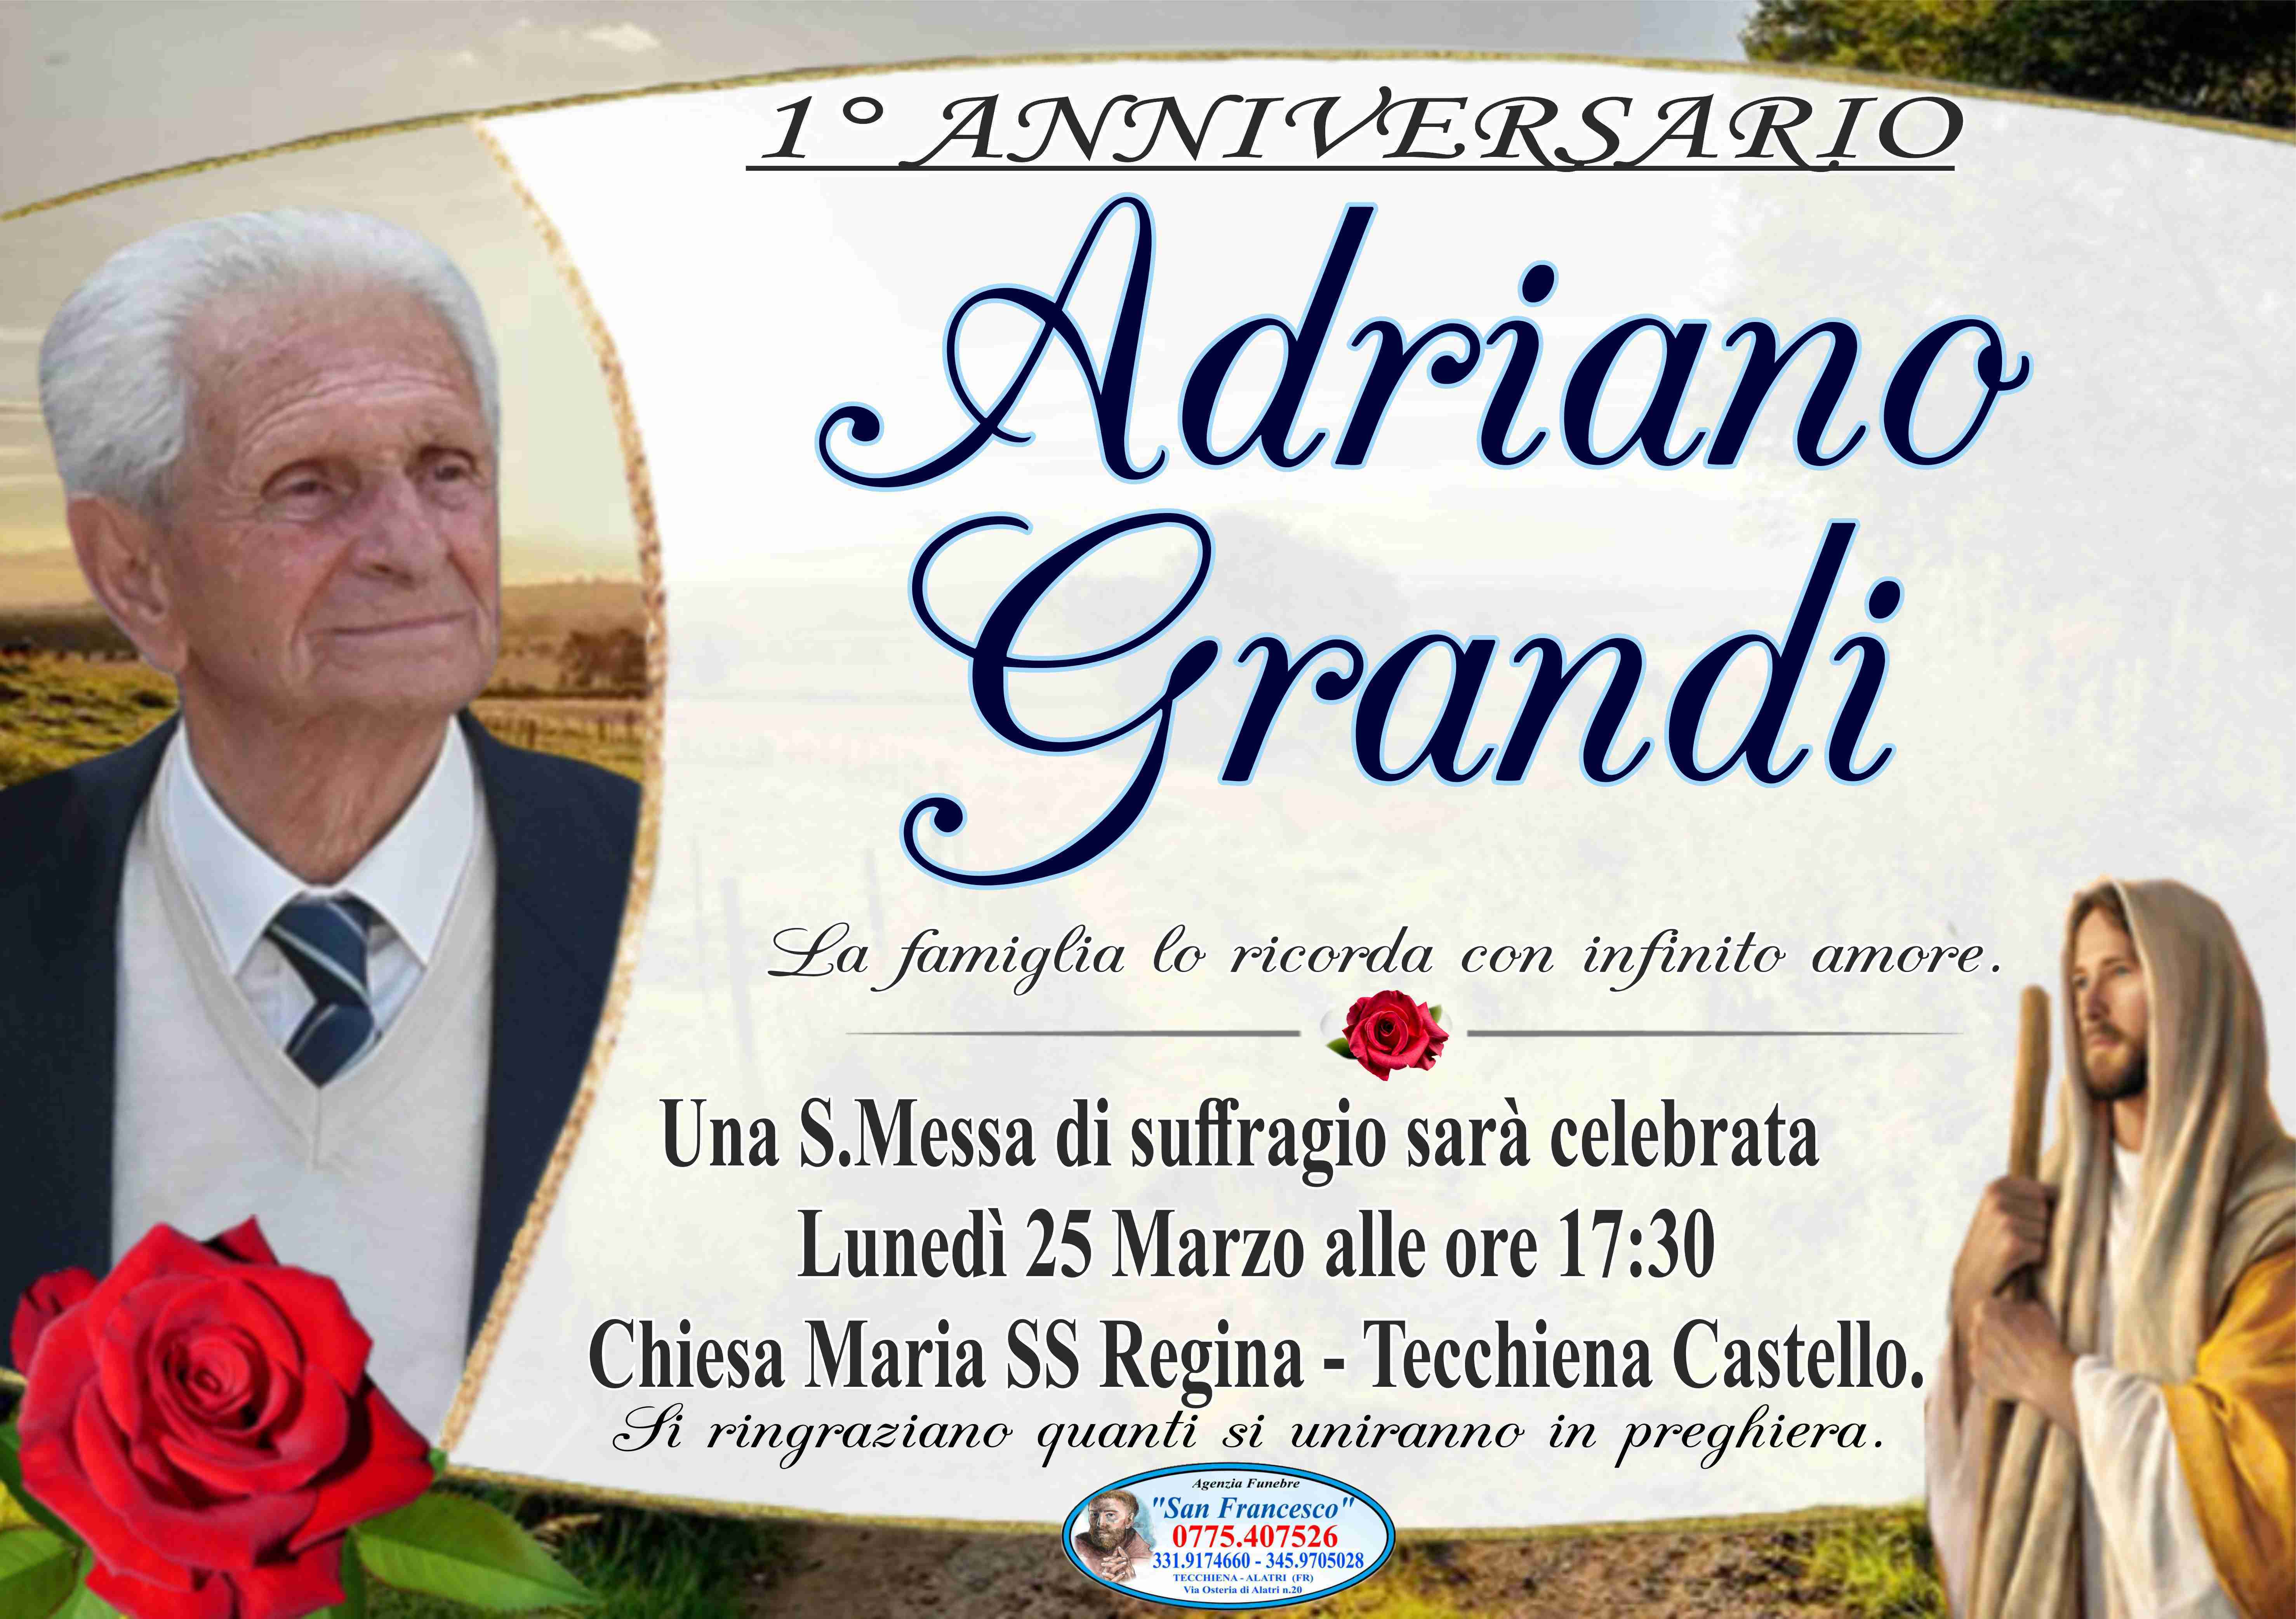 Adriano Grandi